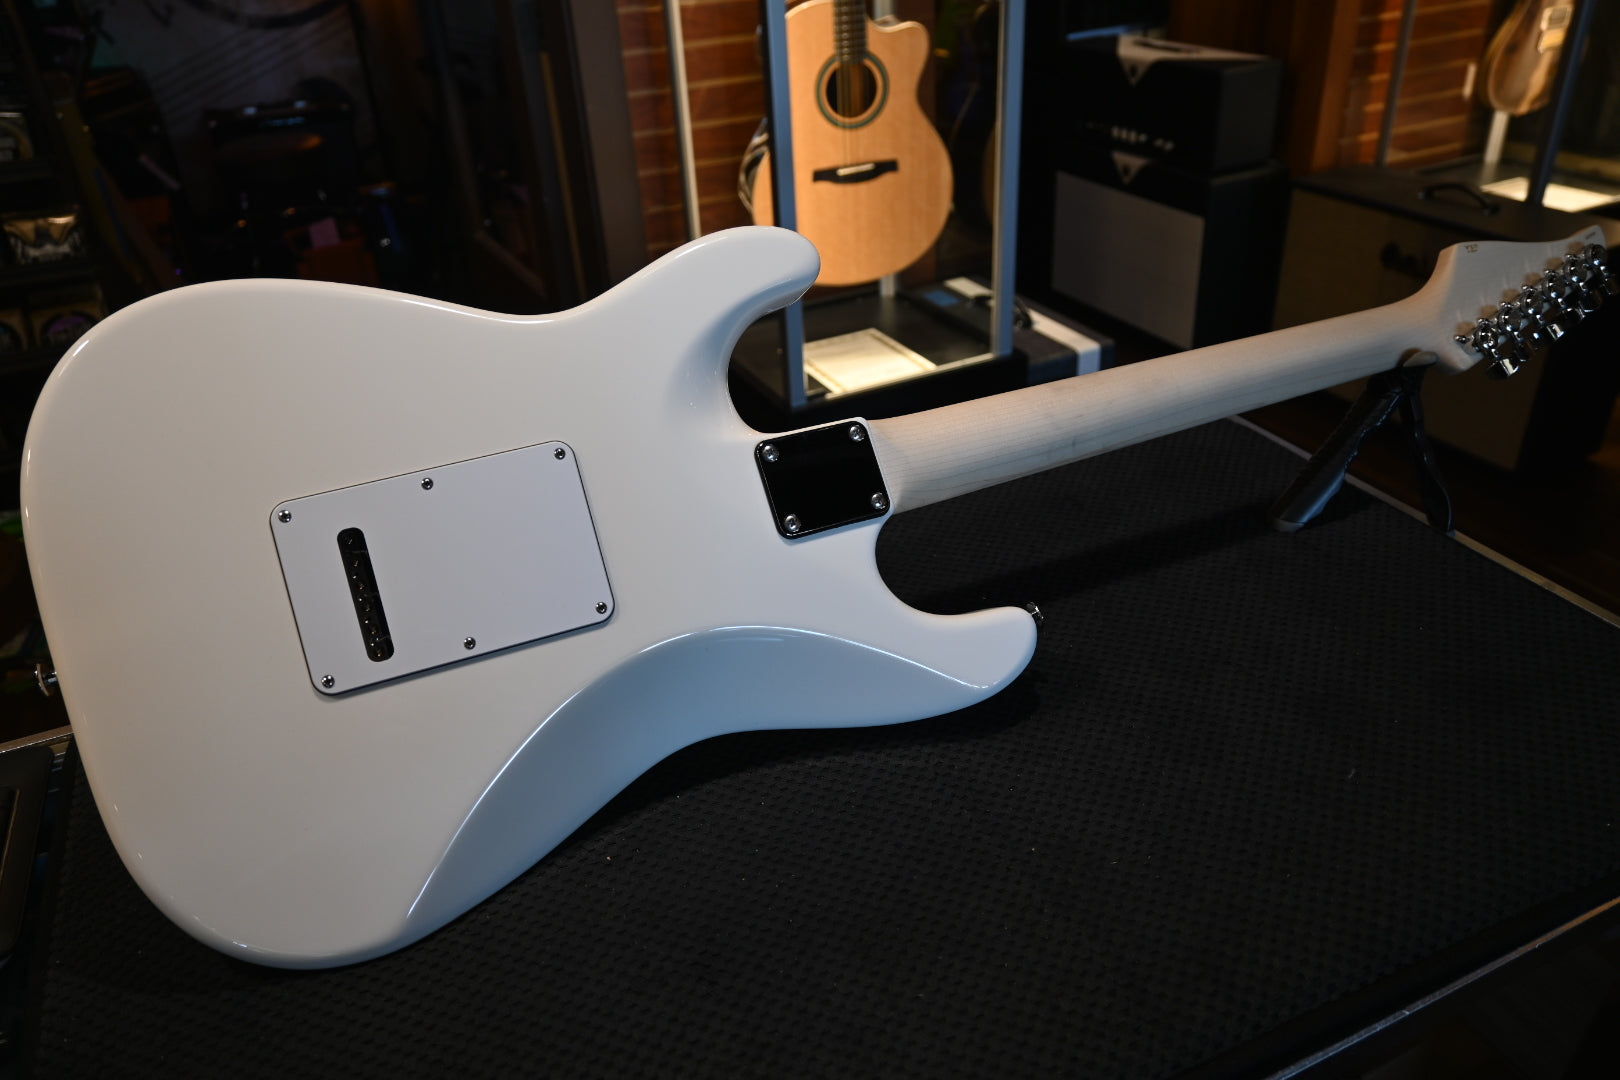 Suhr Custom Classic S - White Guitar #9635 - Danville Music